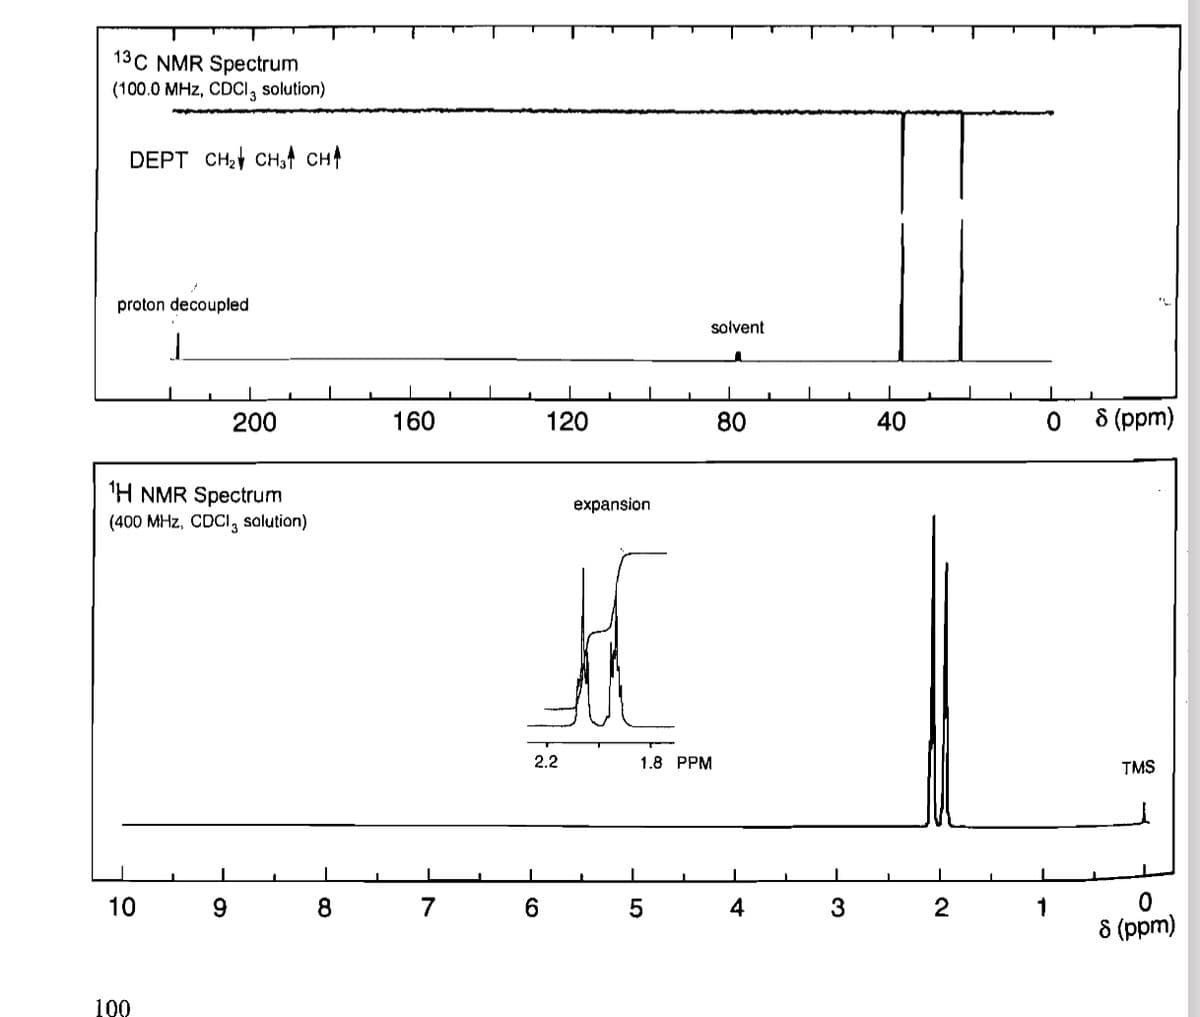 13C NMR Spectrum
(100.0 MHz, CDCl 3 solution)
DEPT CH2 CH3 CH↑
proton decoupled
solvent
200
160
120
80
40
40
1H NMR Spectrum
(400 MHz, CDCI, solution)
L
10
10
9
8
7
6
100
expansion
2.2
1.8 PPM
10
5
0
8 (ppm)
TMS
4
3
2
0
8 (ppm)